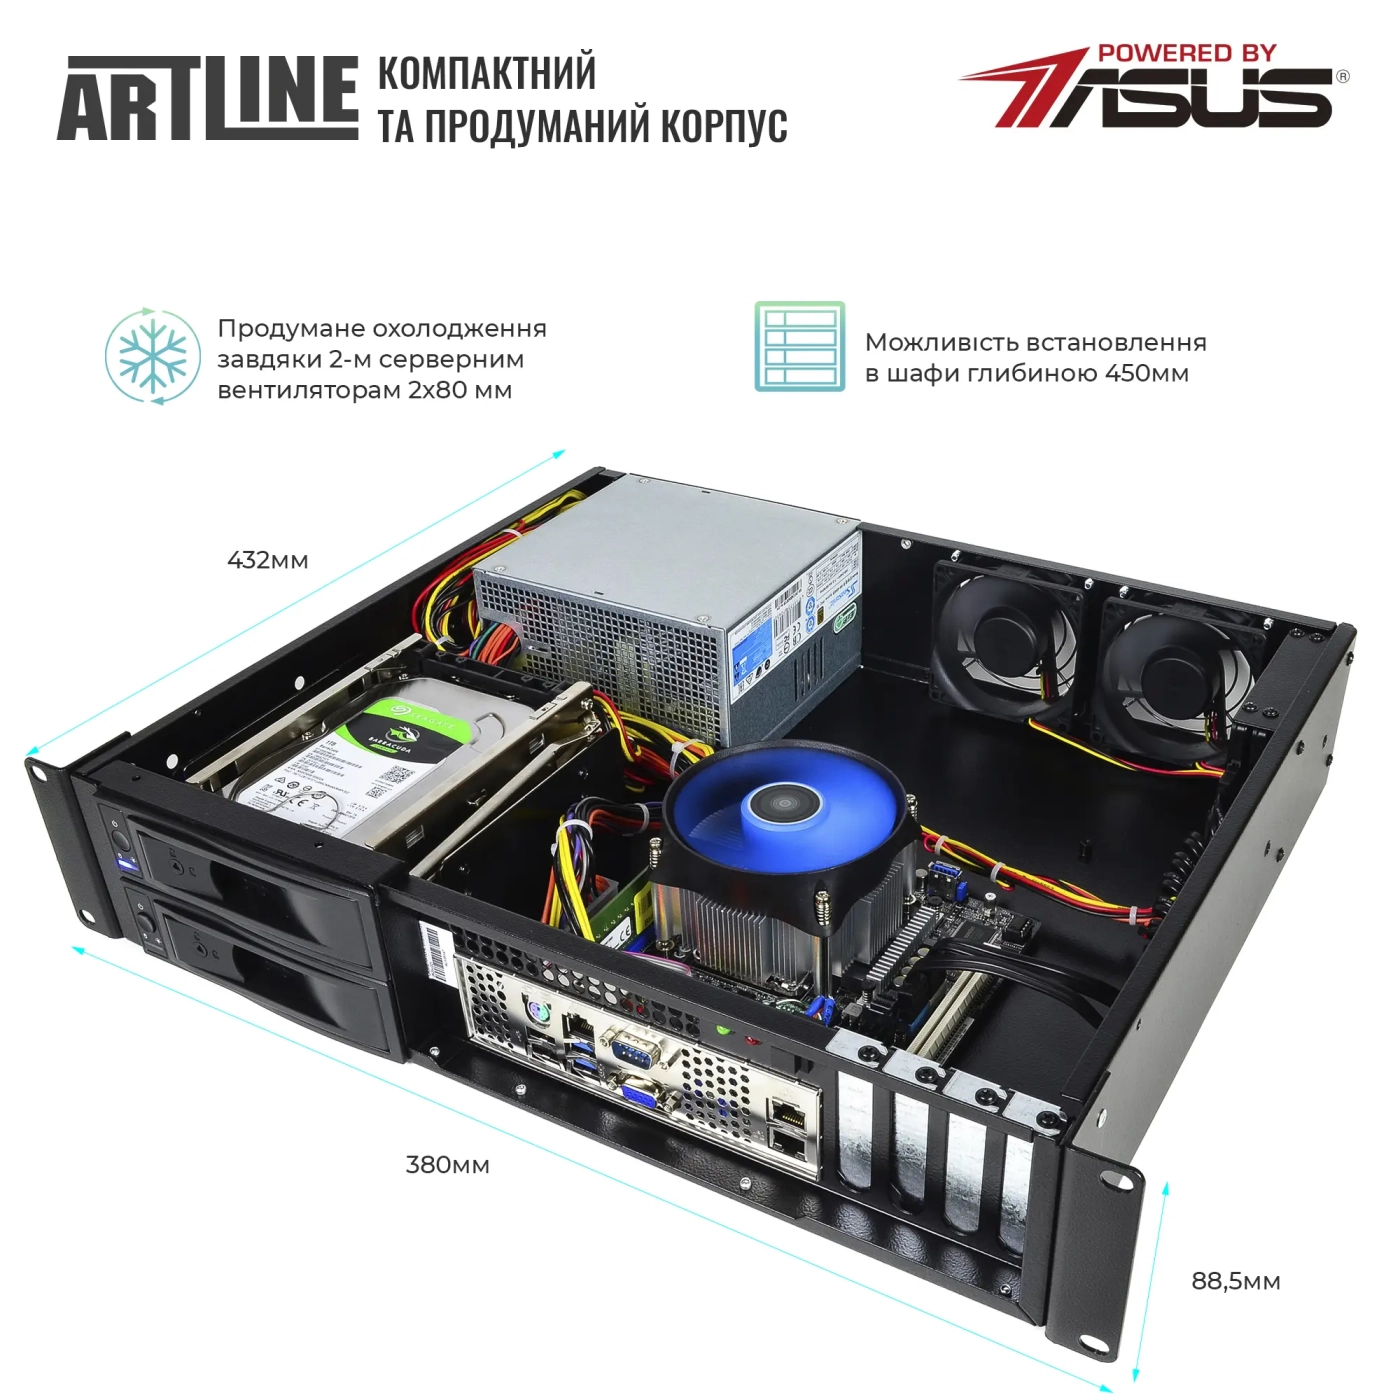 Купить Сервер ARTLINE Business R35 (R35v54) - фото 3